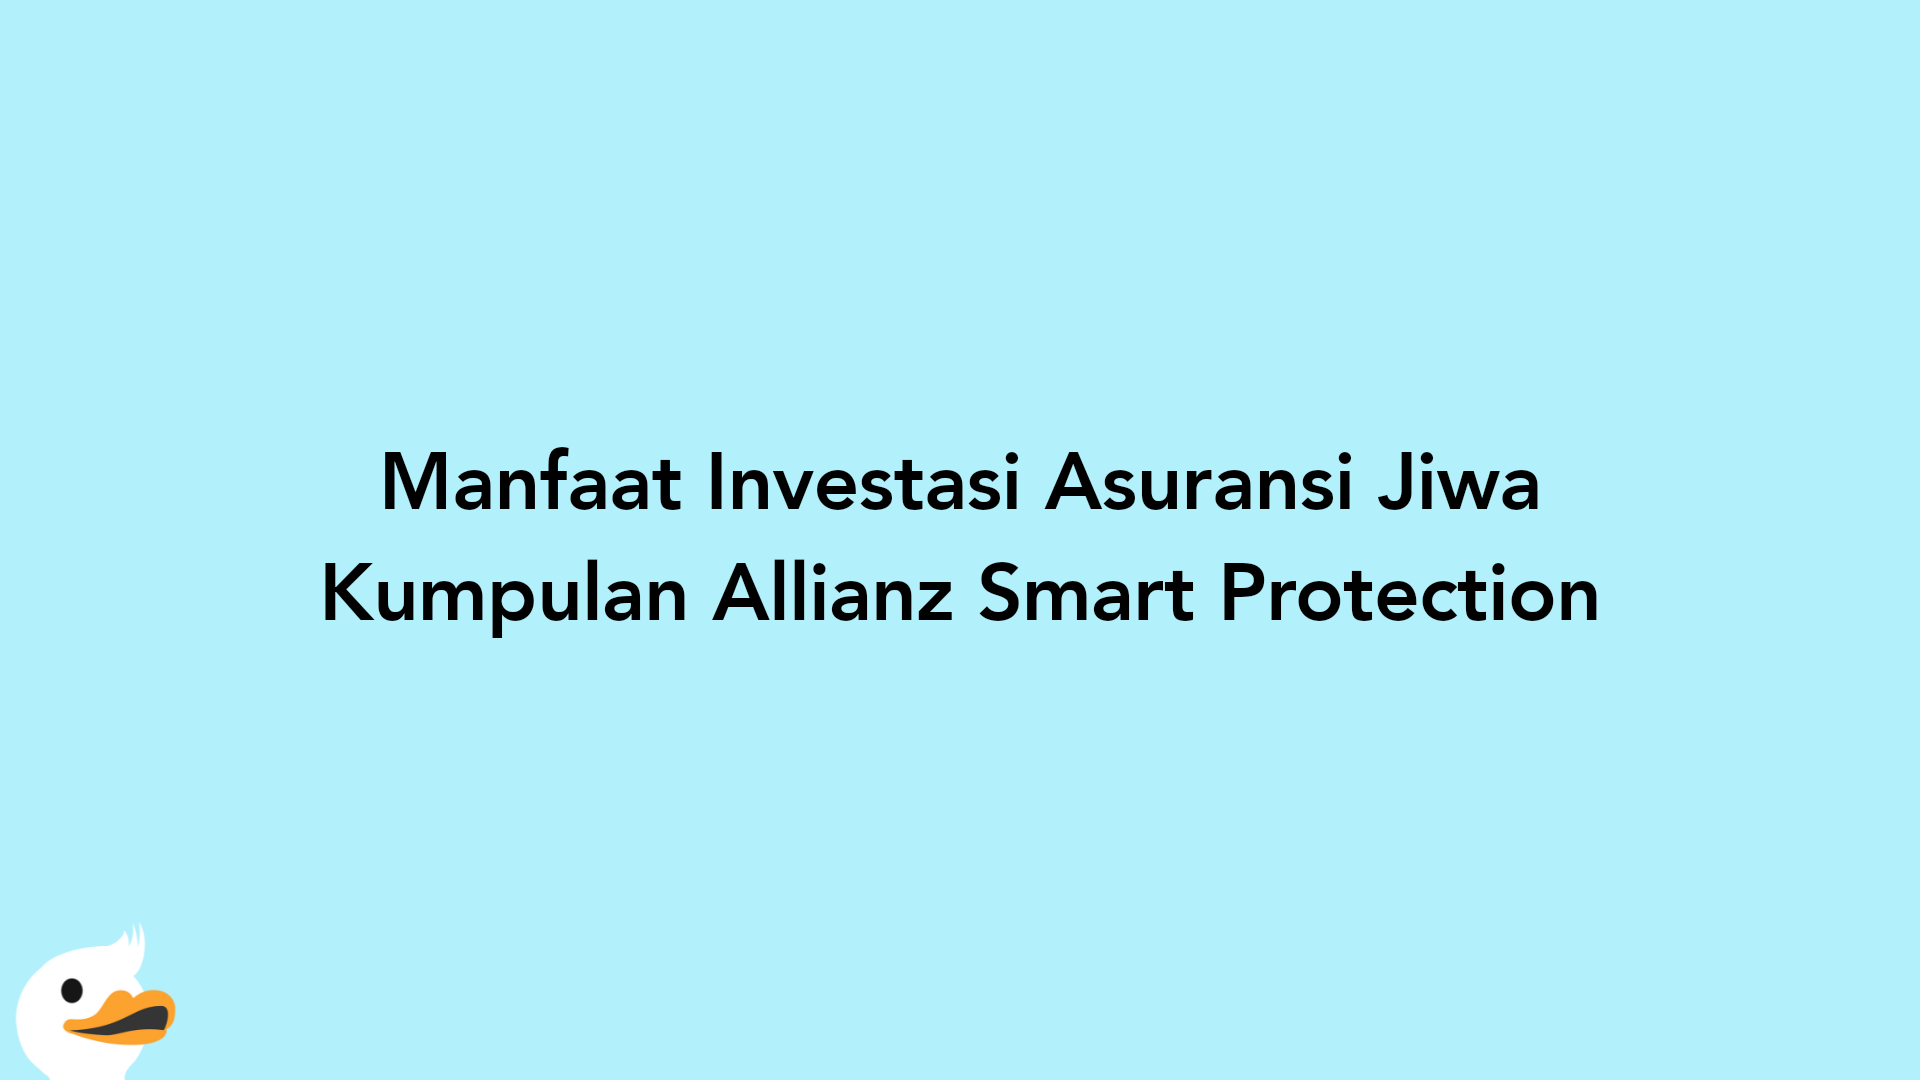 Manfaat Investasi Asuransi Jiwa Kumpulan Allianz Smart Protection